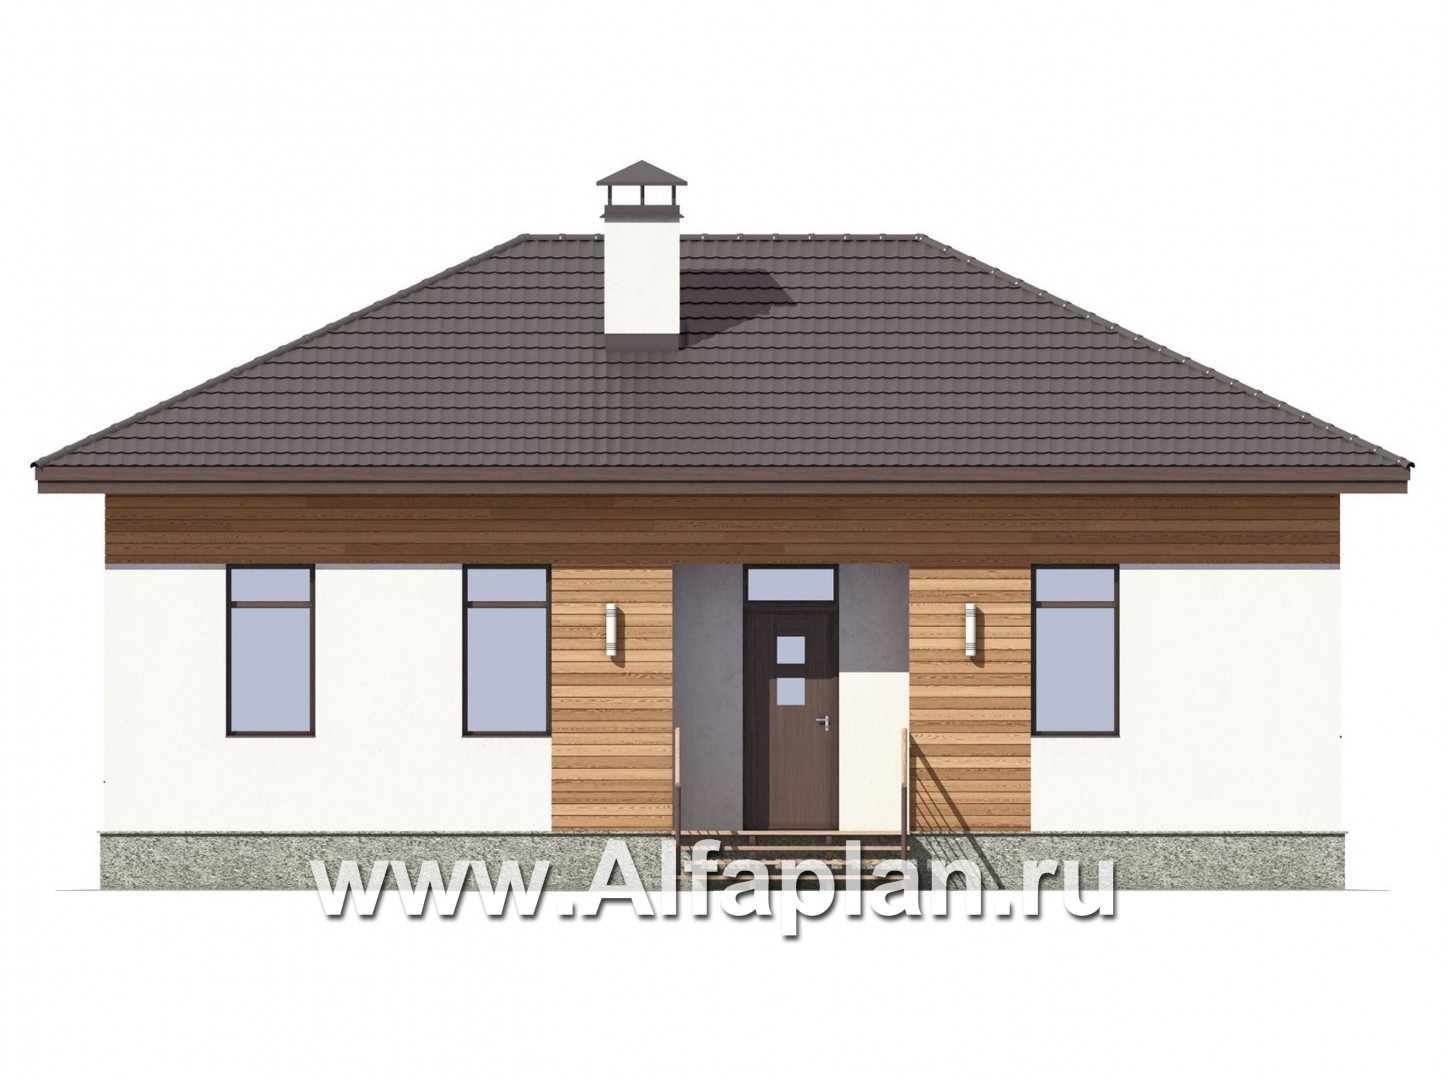 Проект простого одноэтажного дома, дача для небольшой семьи, 2 спальни, в современном стиле - фасад дома